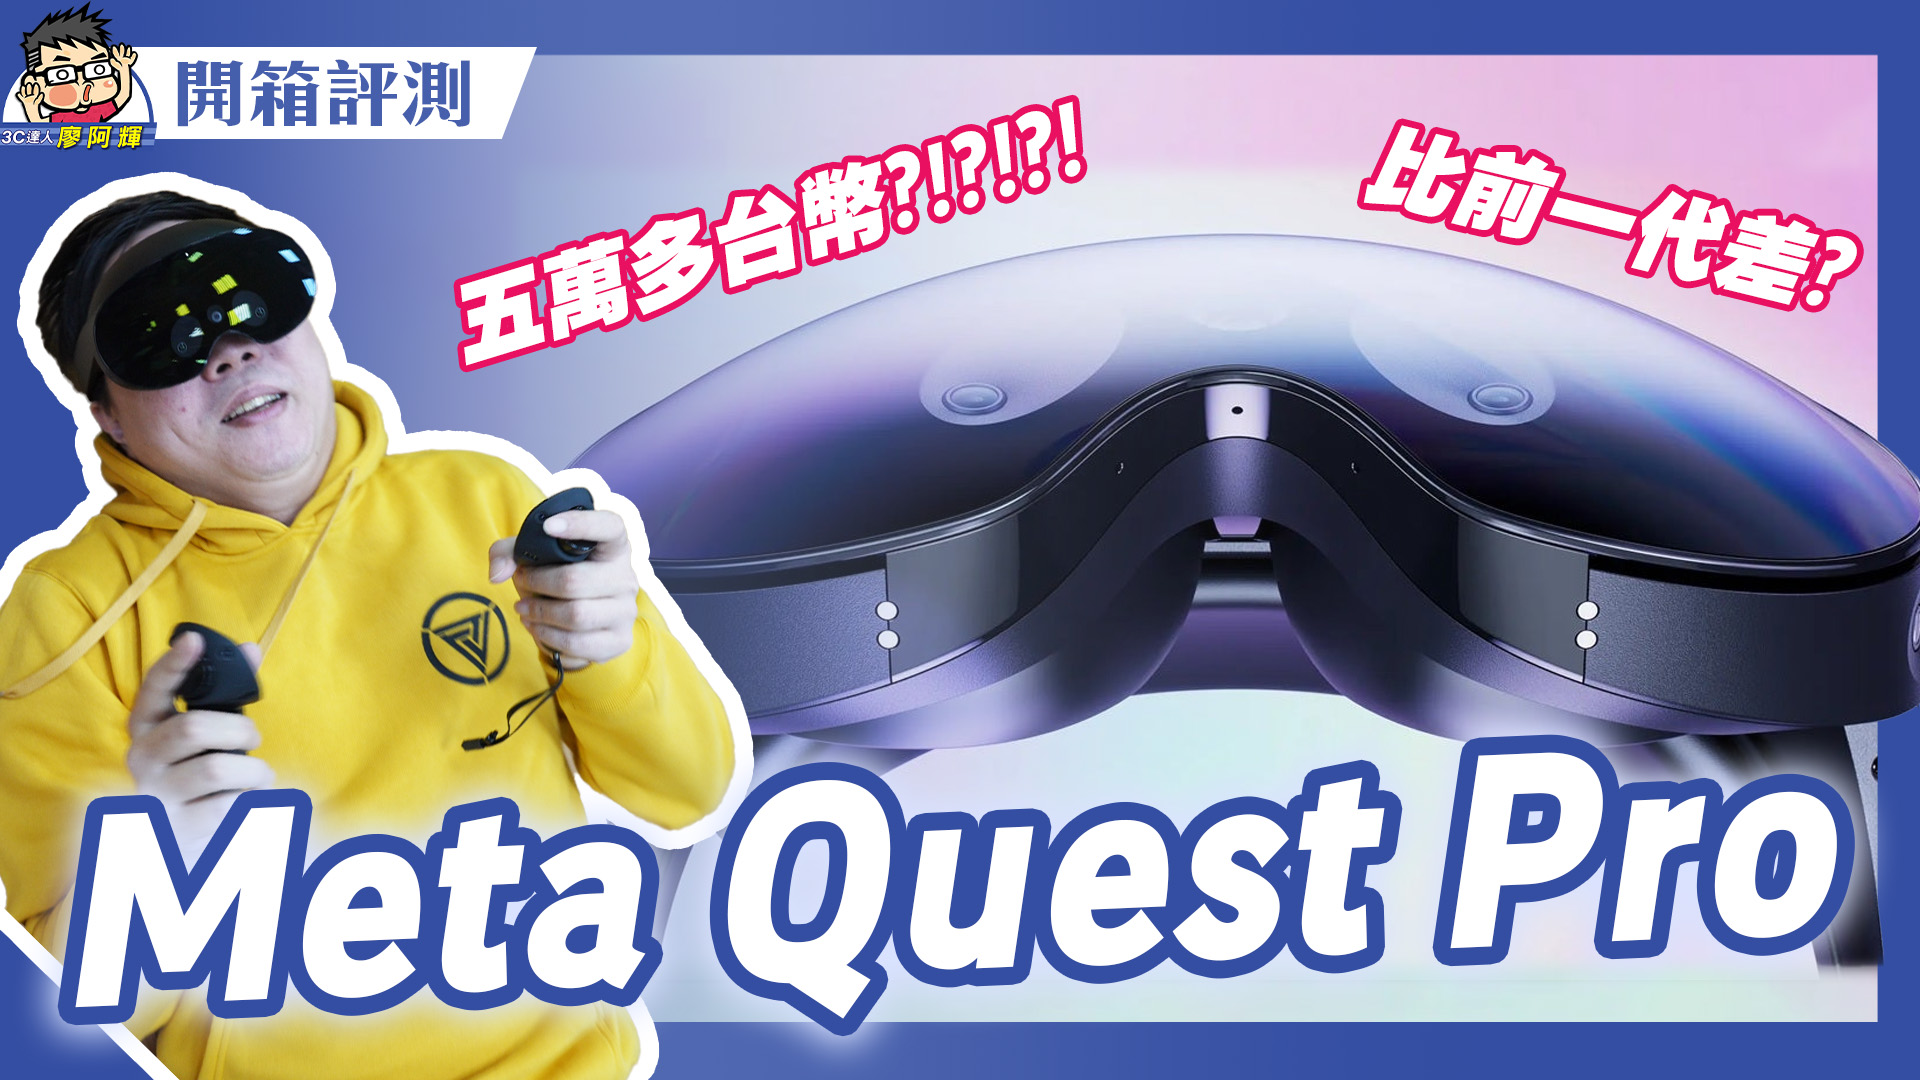 [影片] Vision Pro 發表後才開箱 Quest Pro 真是史上賠最慘烈企劃 @3C 達人廖阿輝